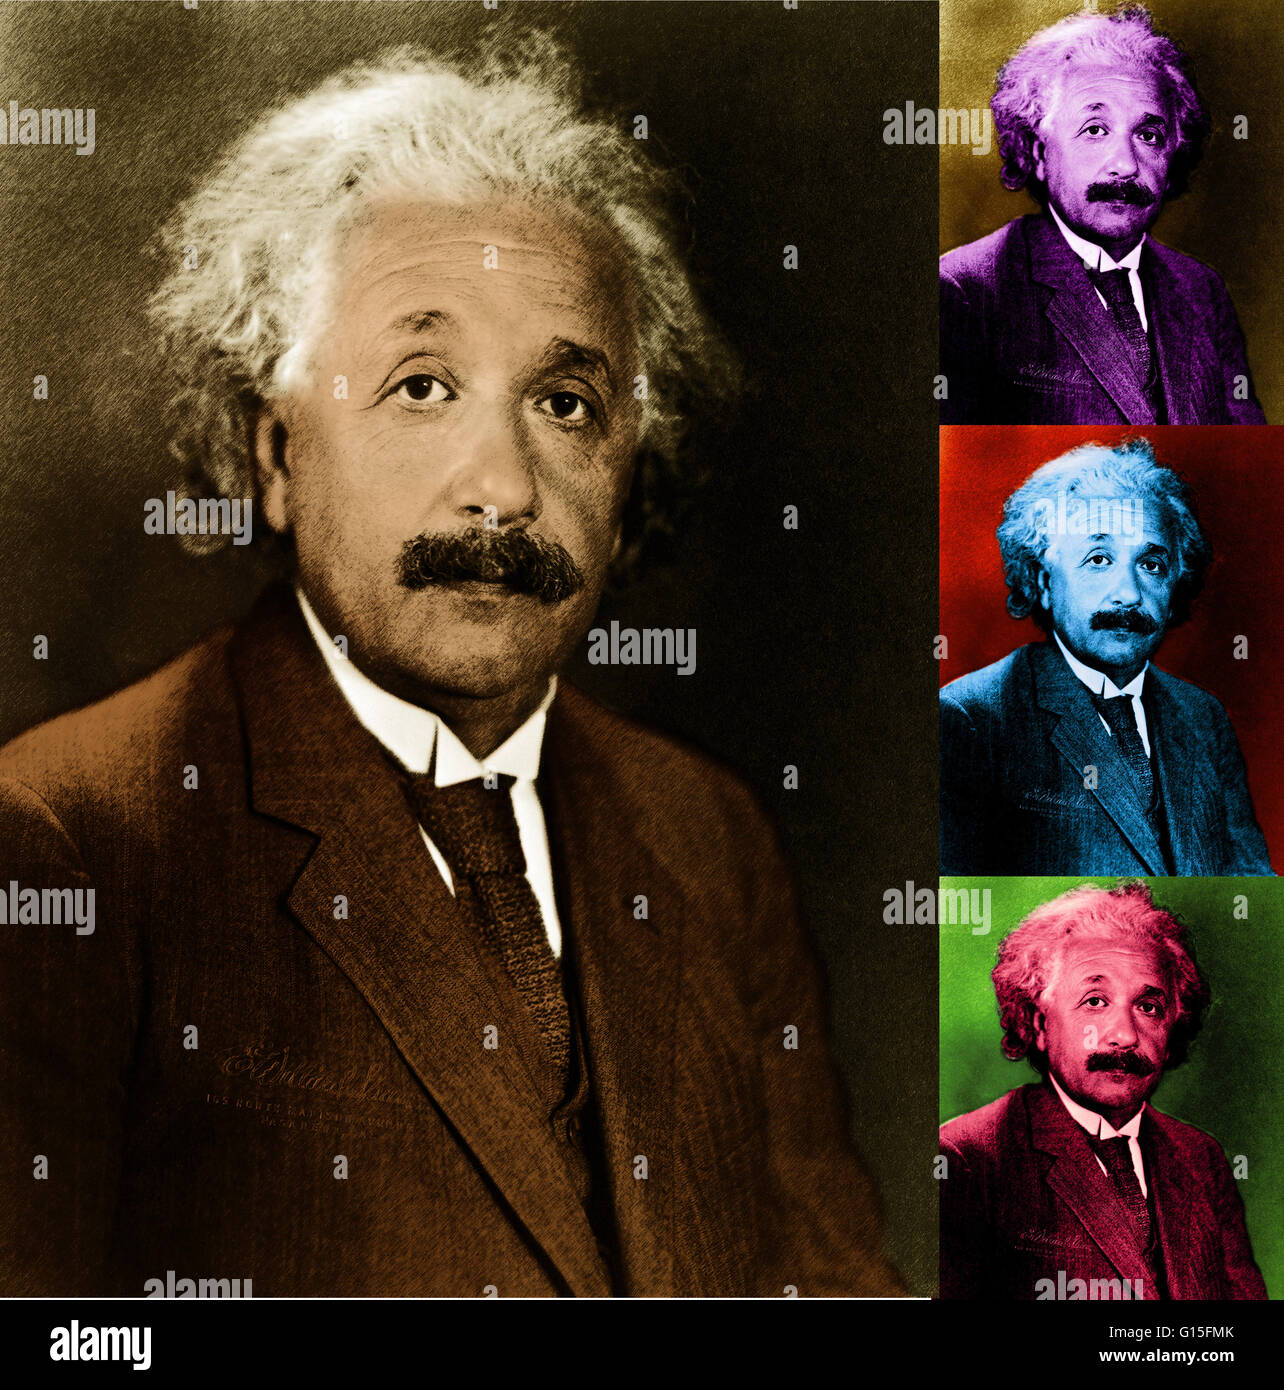 Albert Einstein (14. März 1879 - 18. April 1955) war ein deutschstämmiger theoretischer Physiker, der die allgemeine Relativitätstheorie, bewirken eine Revolution in der Physik entwickelt. Einstein wird oft als der Vater der modernen Physik und die meisten Influentia angesehen. Stockfoto